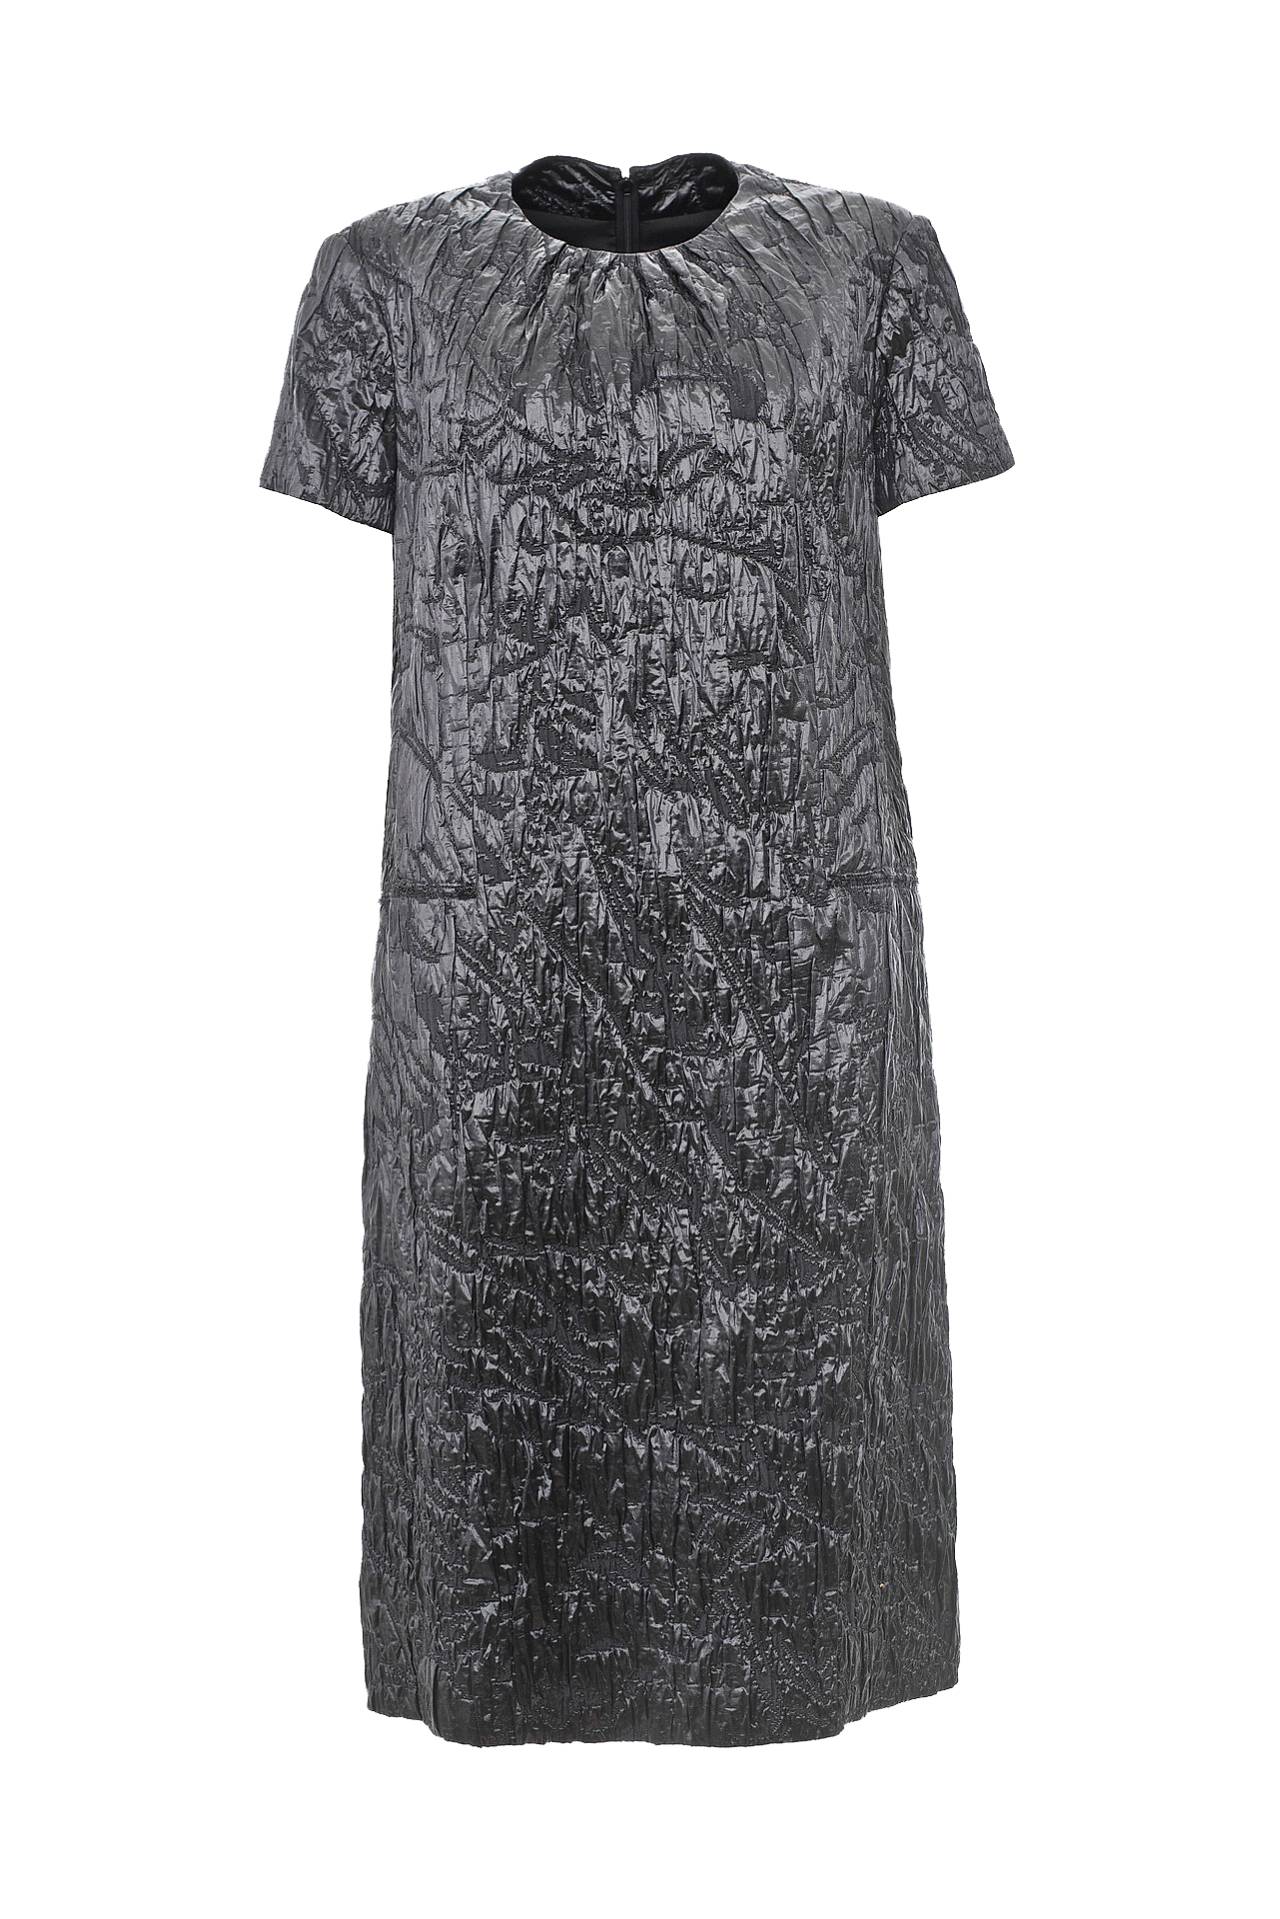 Одежда женская Платье Yves Saint Laurent Vintage (12/061/28). Купить за 41825 руб.